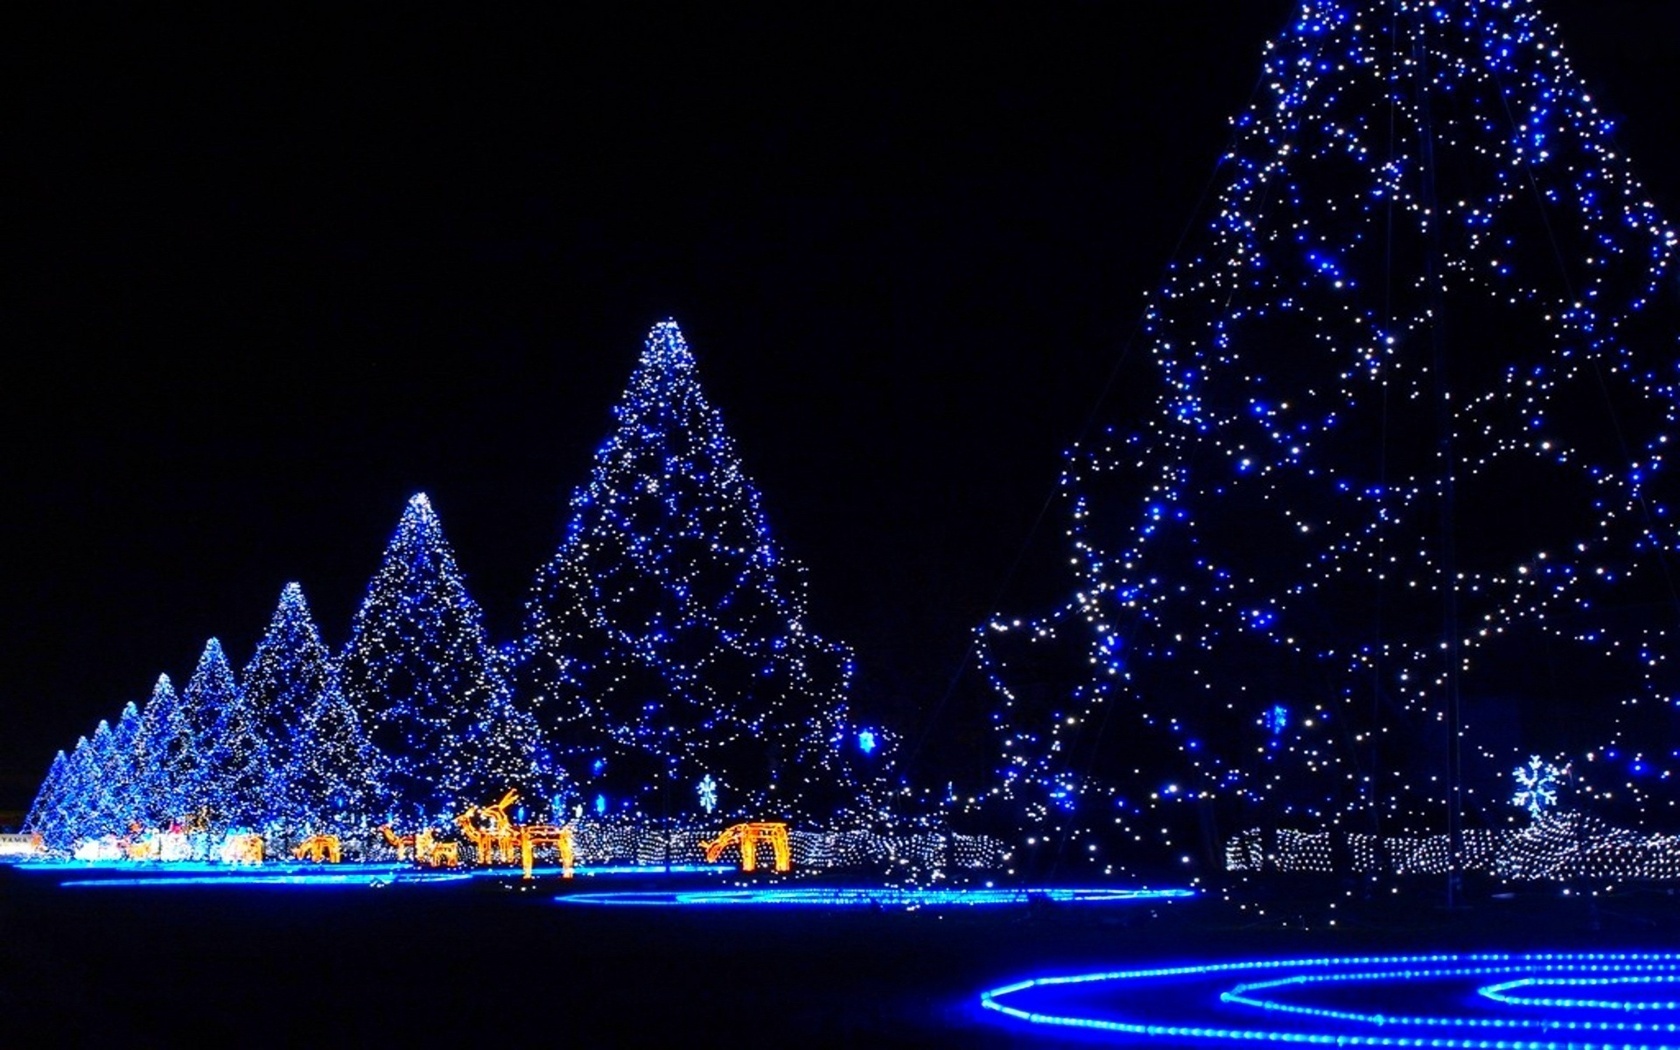 Popular Christmas Lights Image for Phone